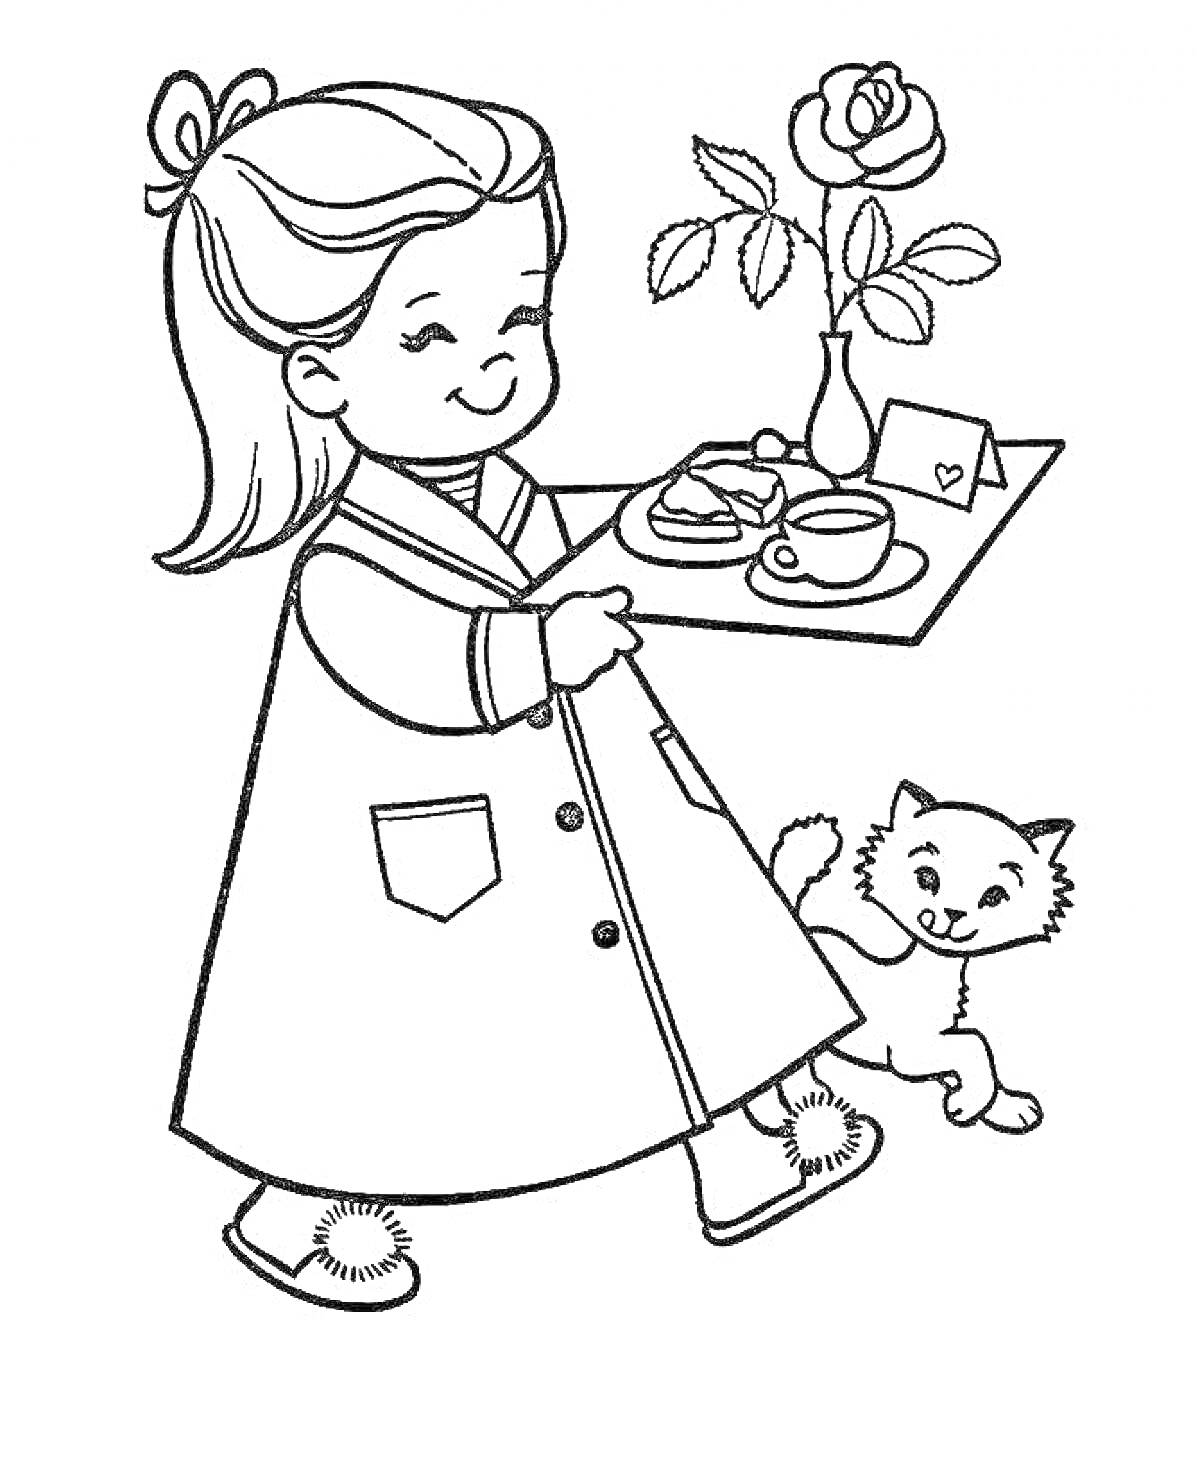 Девочка с подносом, на котором находится роза, чашка, блюдце, письмо и бутерброд. Рядом с девочкой стоит кошка.